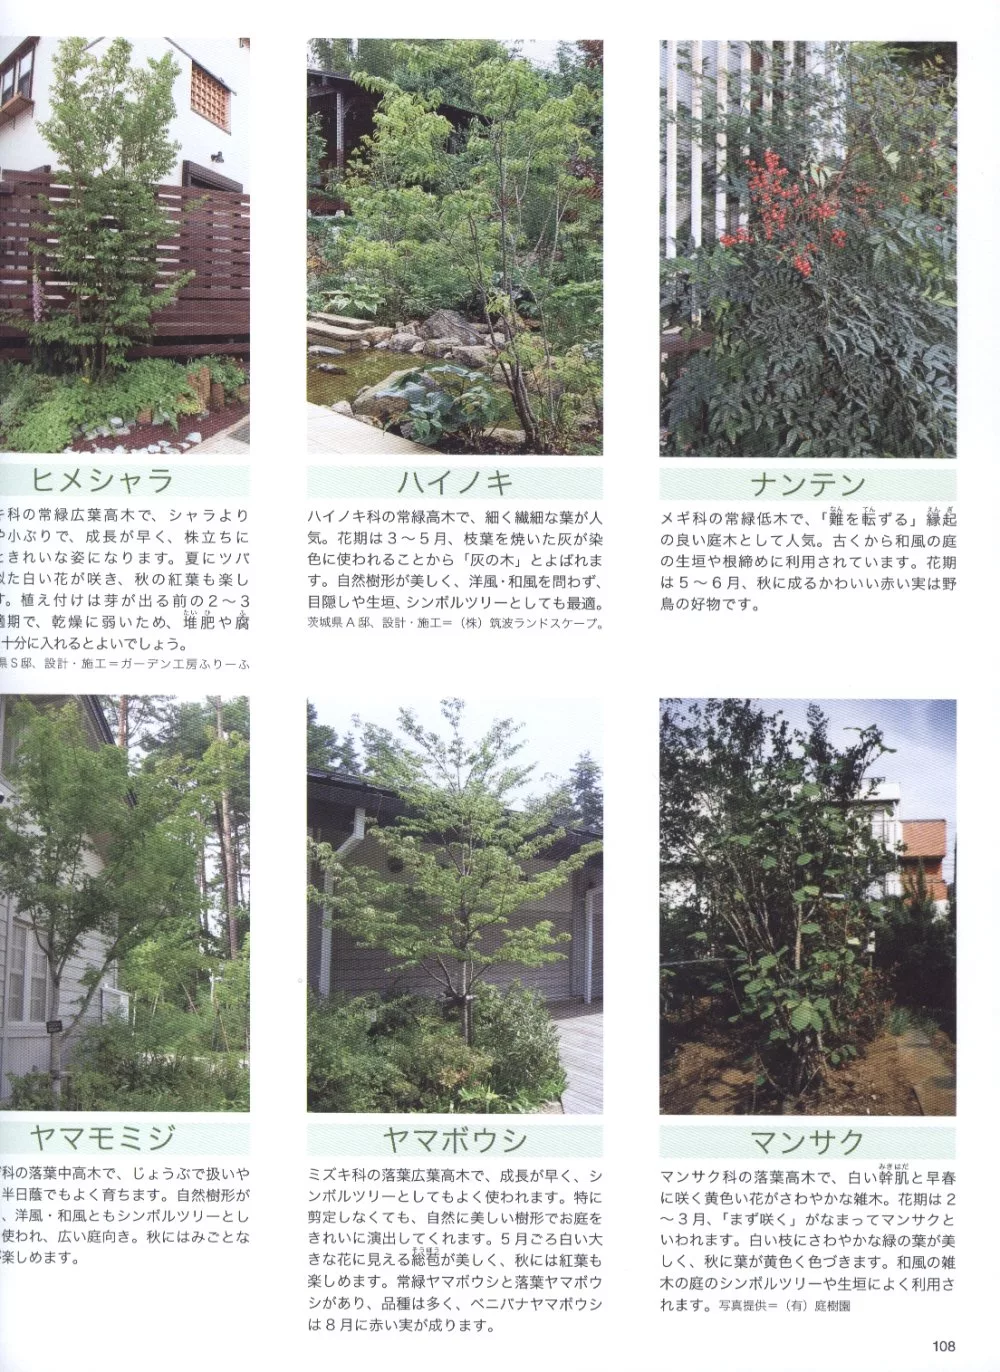 綠意樹木居家庭園佈置技巧實例集 買書網